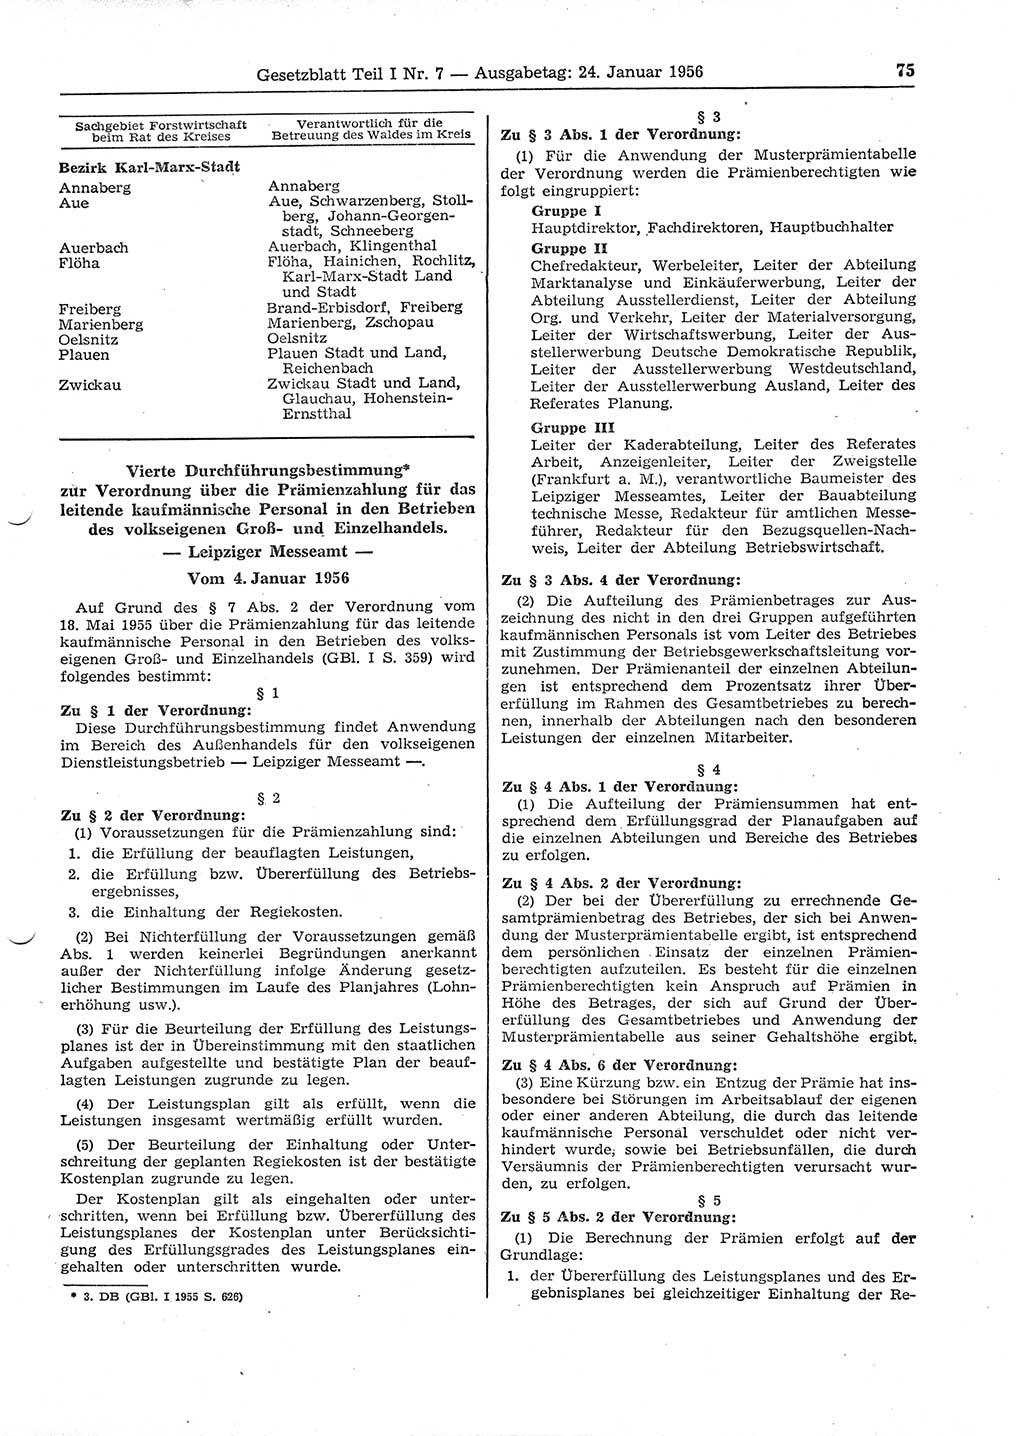 Gesetzblatt (GBl.) der Deutschen Demokratischen Republik (DDR) Teil Ⅰ 1956, Seite 75 (GBl. DDR Ⅰ 1956, S. 75)